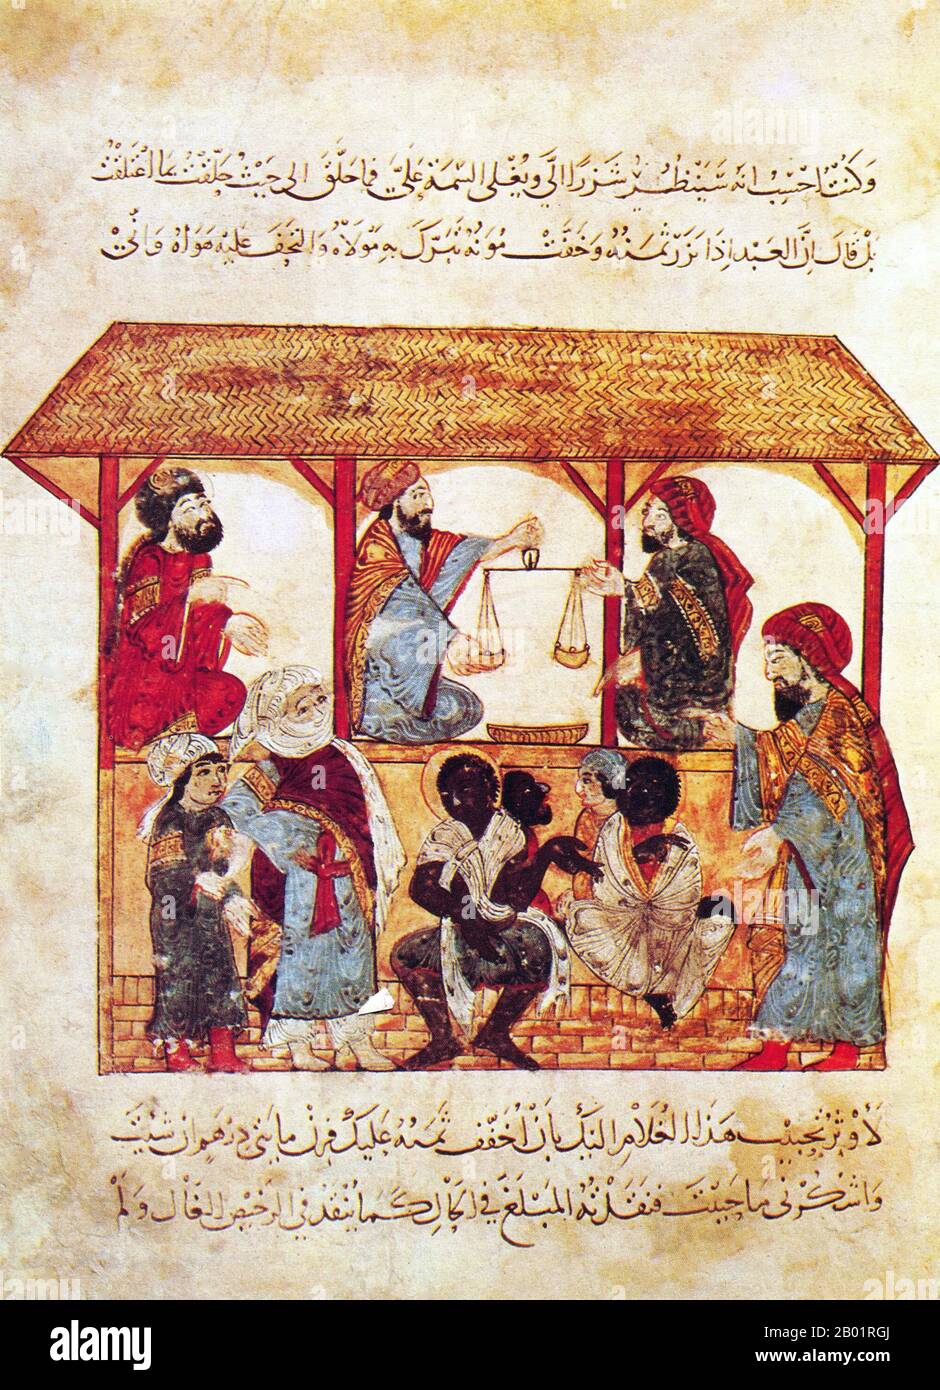 Iraq: Il mercato degli schiavi a Zabid nello Yemen. Pittura in miniatura di Yahya ibn Mahmud al-Wasiti, 1237 d.C. Yahyâ ibn Mahmûd al-Wâsitî è stato un artista arabo islamico del XIII secolo. Al-Wasiti è nato a Wasit, nel sud dell'Iraq. Era noto per le sue illustrazioni del Maqam di al-Hariri. I Maqāma (letteralmente "assemblee") sono un genere letterario arabo (originariamente) di prosa rimata con intervalli di poesia in cui la stravaganza retorica è evidente. Si dice che l'autore del X secolo Badī' al-Zaman al-Hamadhāni abbia inventato la forma, che fu estesa da al-Hariri di Bassora nel secolo successivo. Foto Stock